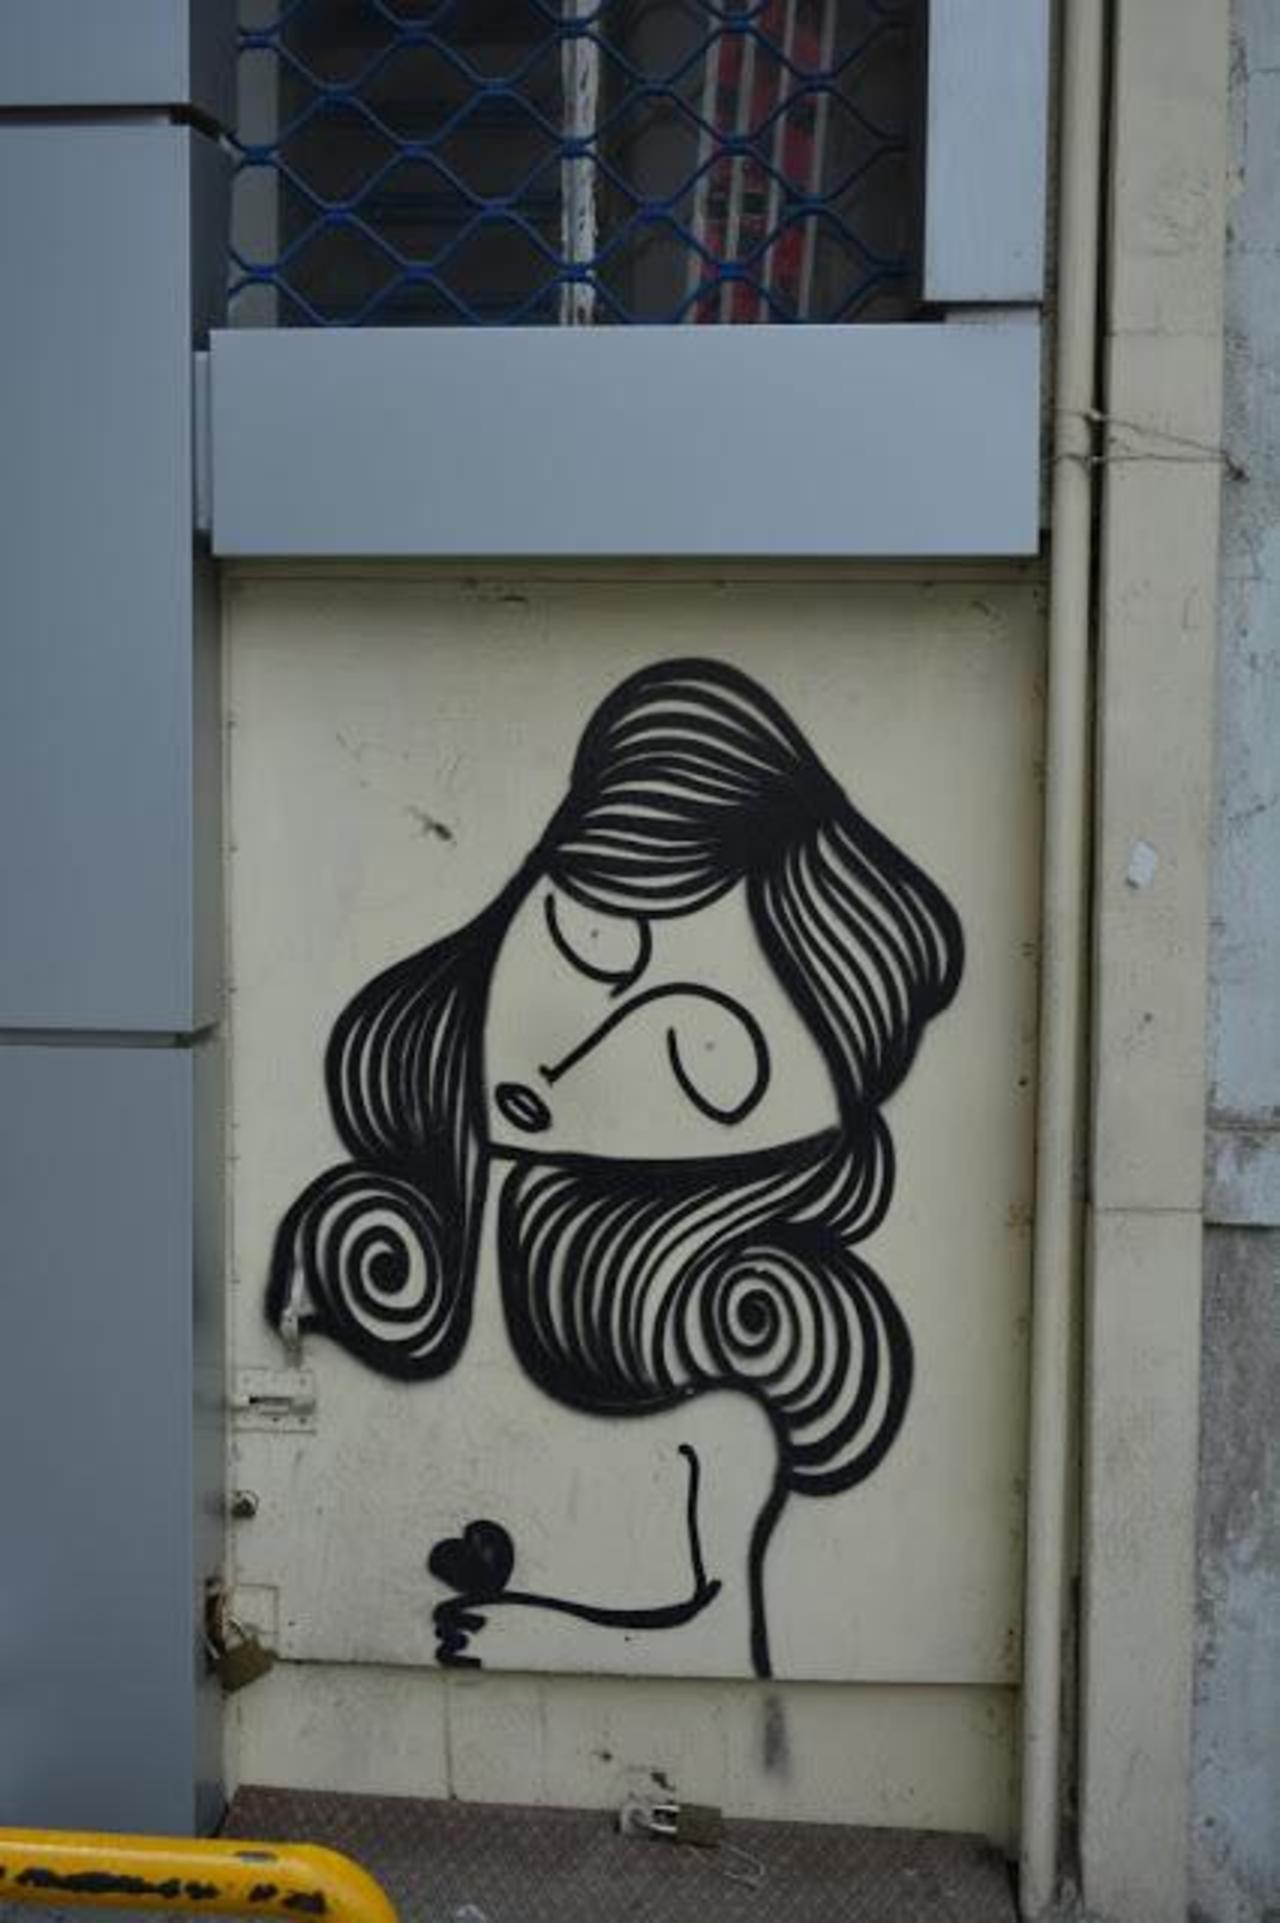 20/10/15, Σαπφούς 17 Αθήνα - 3 φωτό #art #streetart #graffiti #Athens If you want to see m… http://ift.tt/1mxu95z https://t.co/HQuuCxw7aU